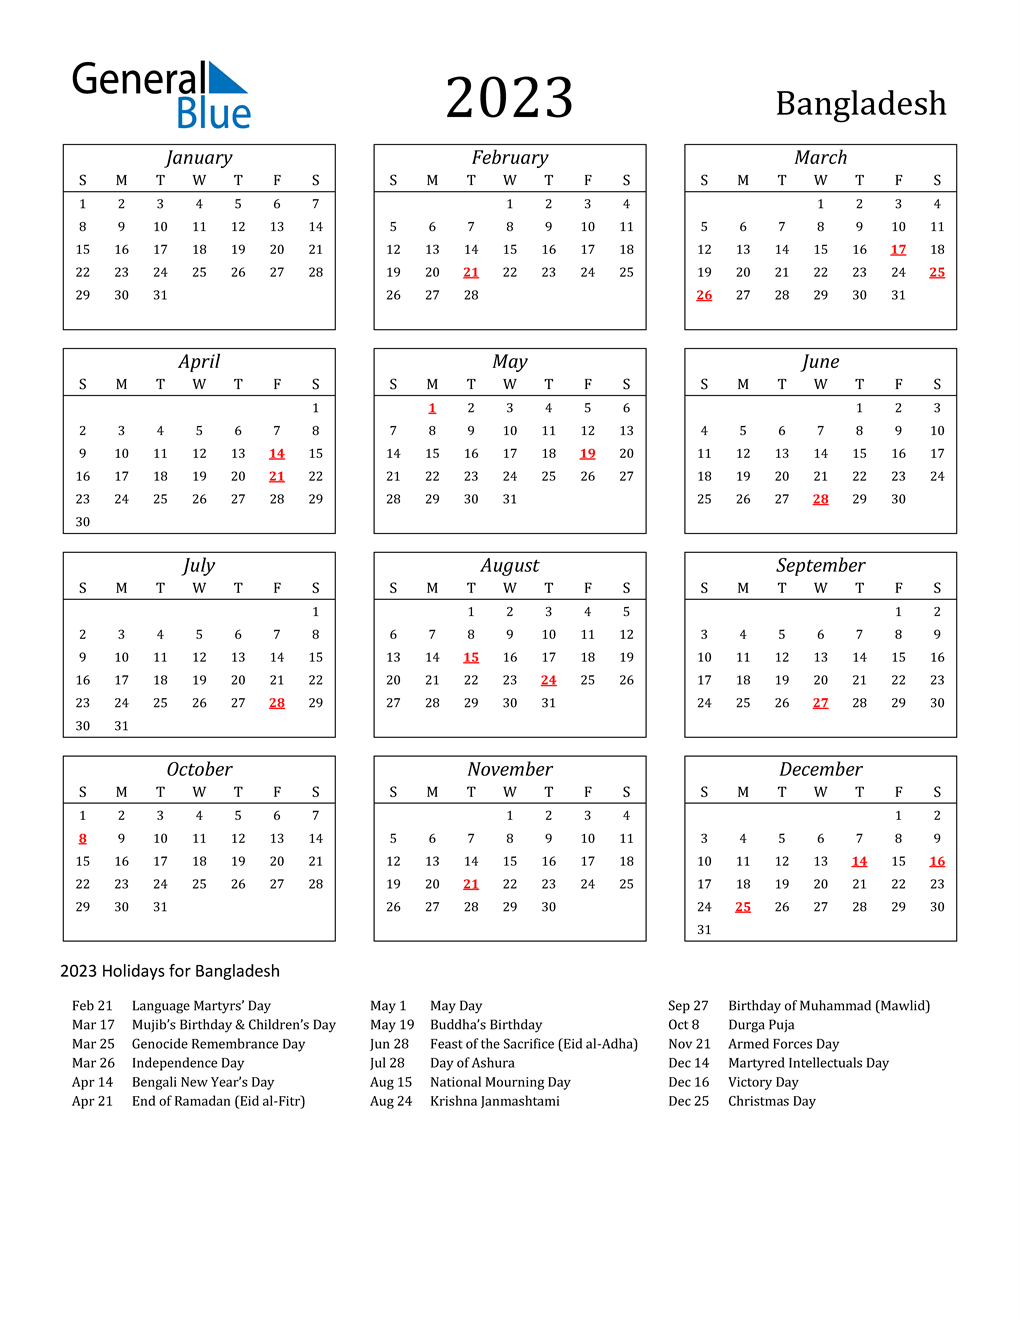 Fsu 2022 2023 Calendar 2023 Bangladesh Calendar With Holidays